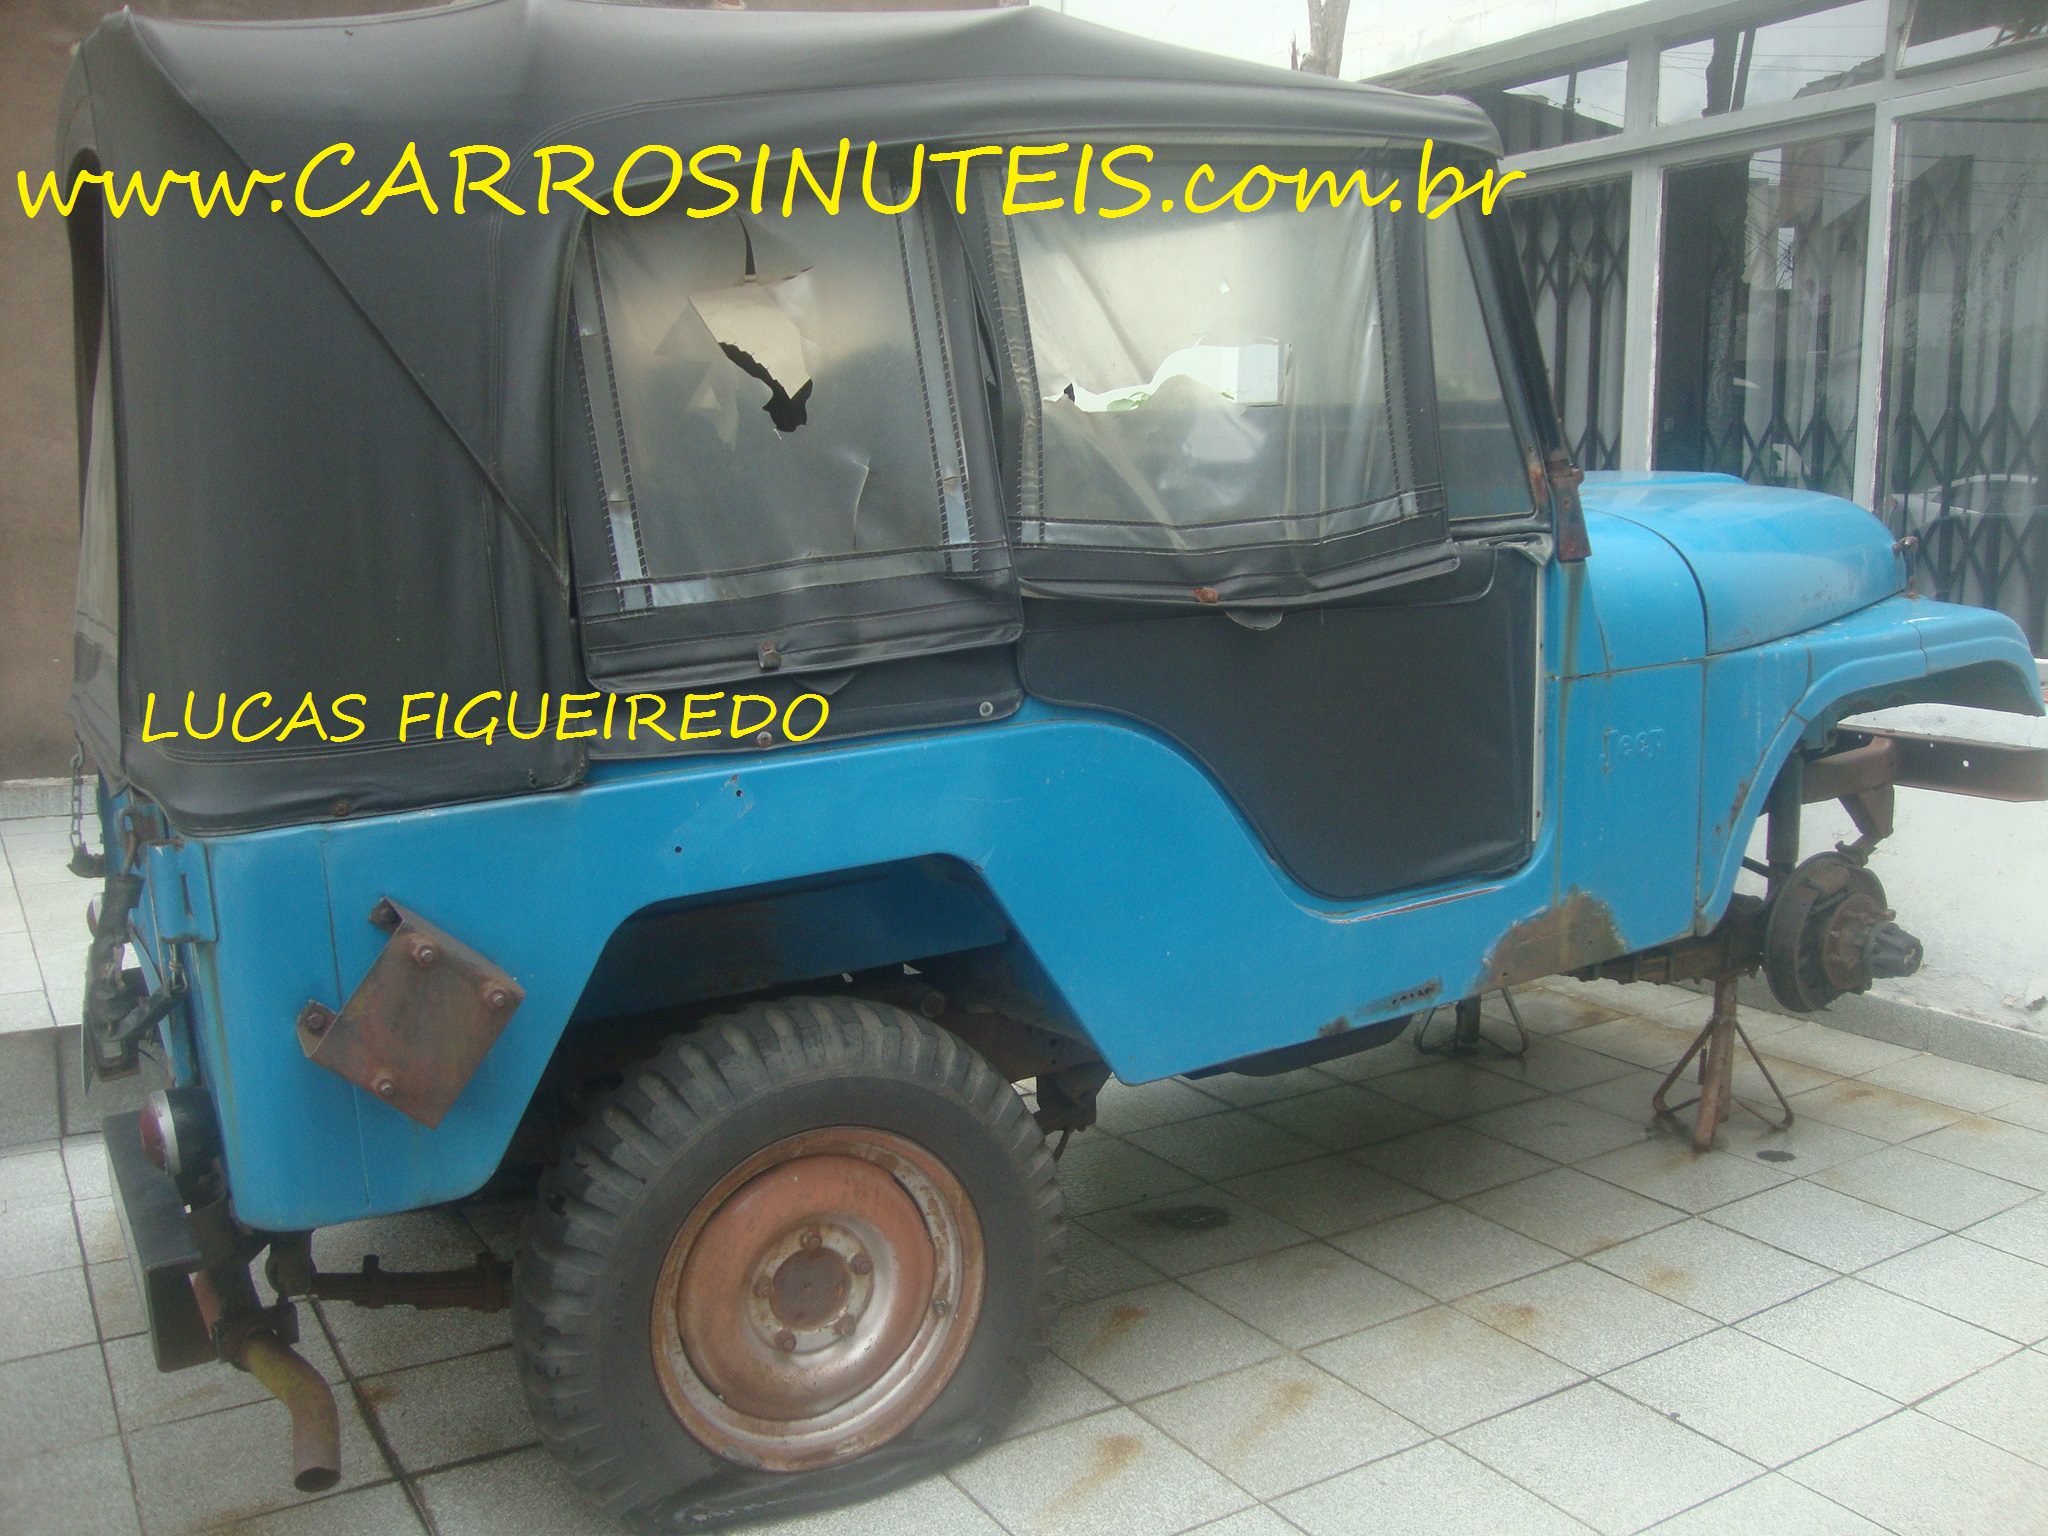 Jeep Willys, São Paulo, SP.